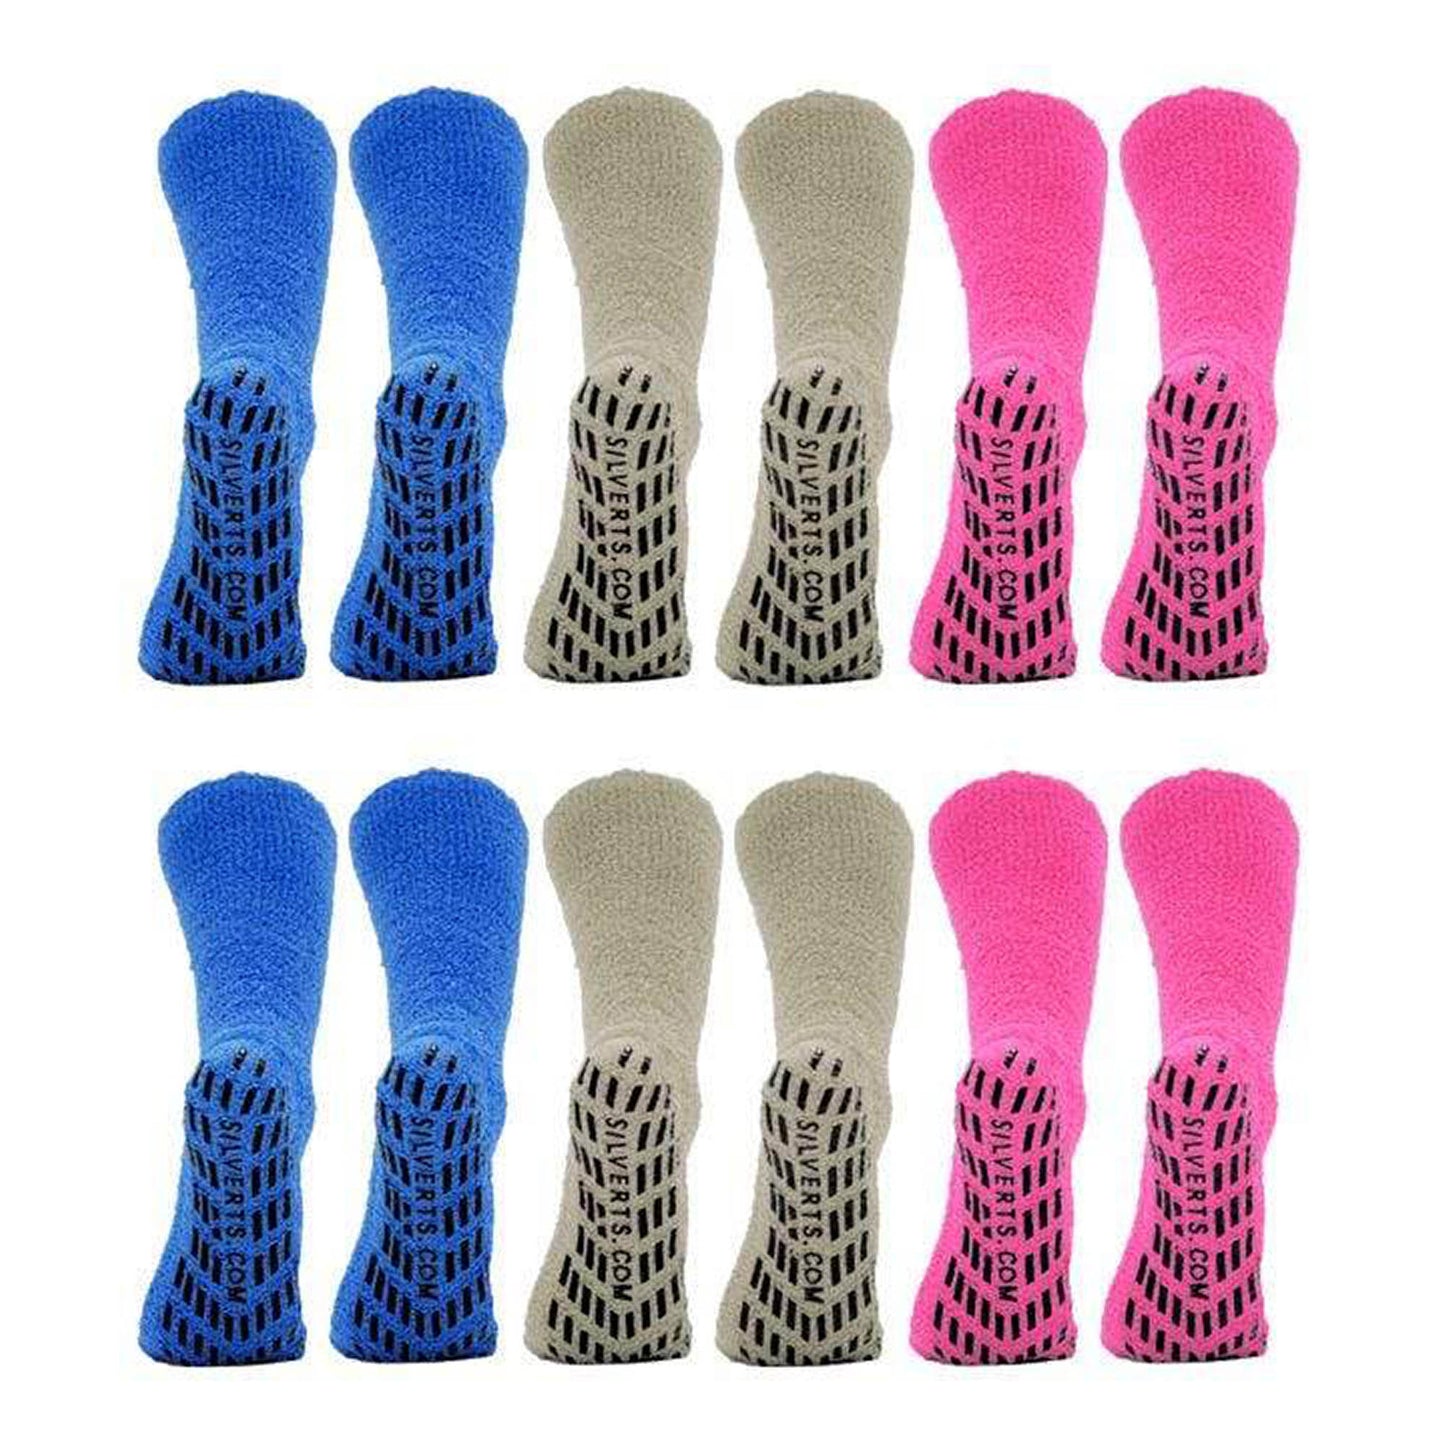 Slipper Socks - Set of 6